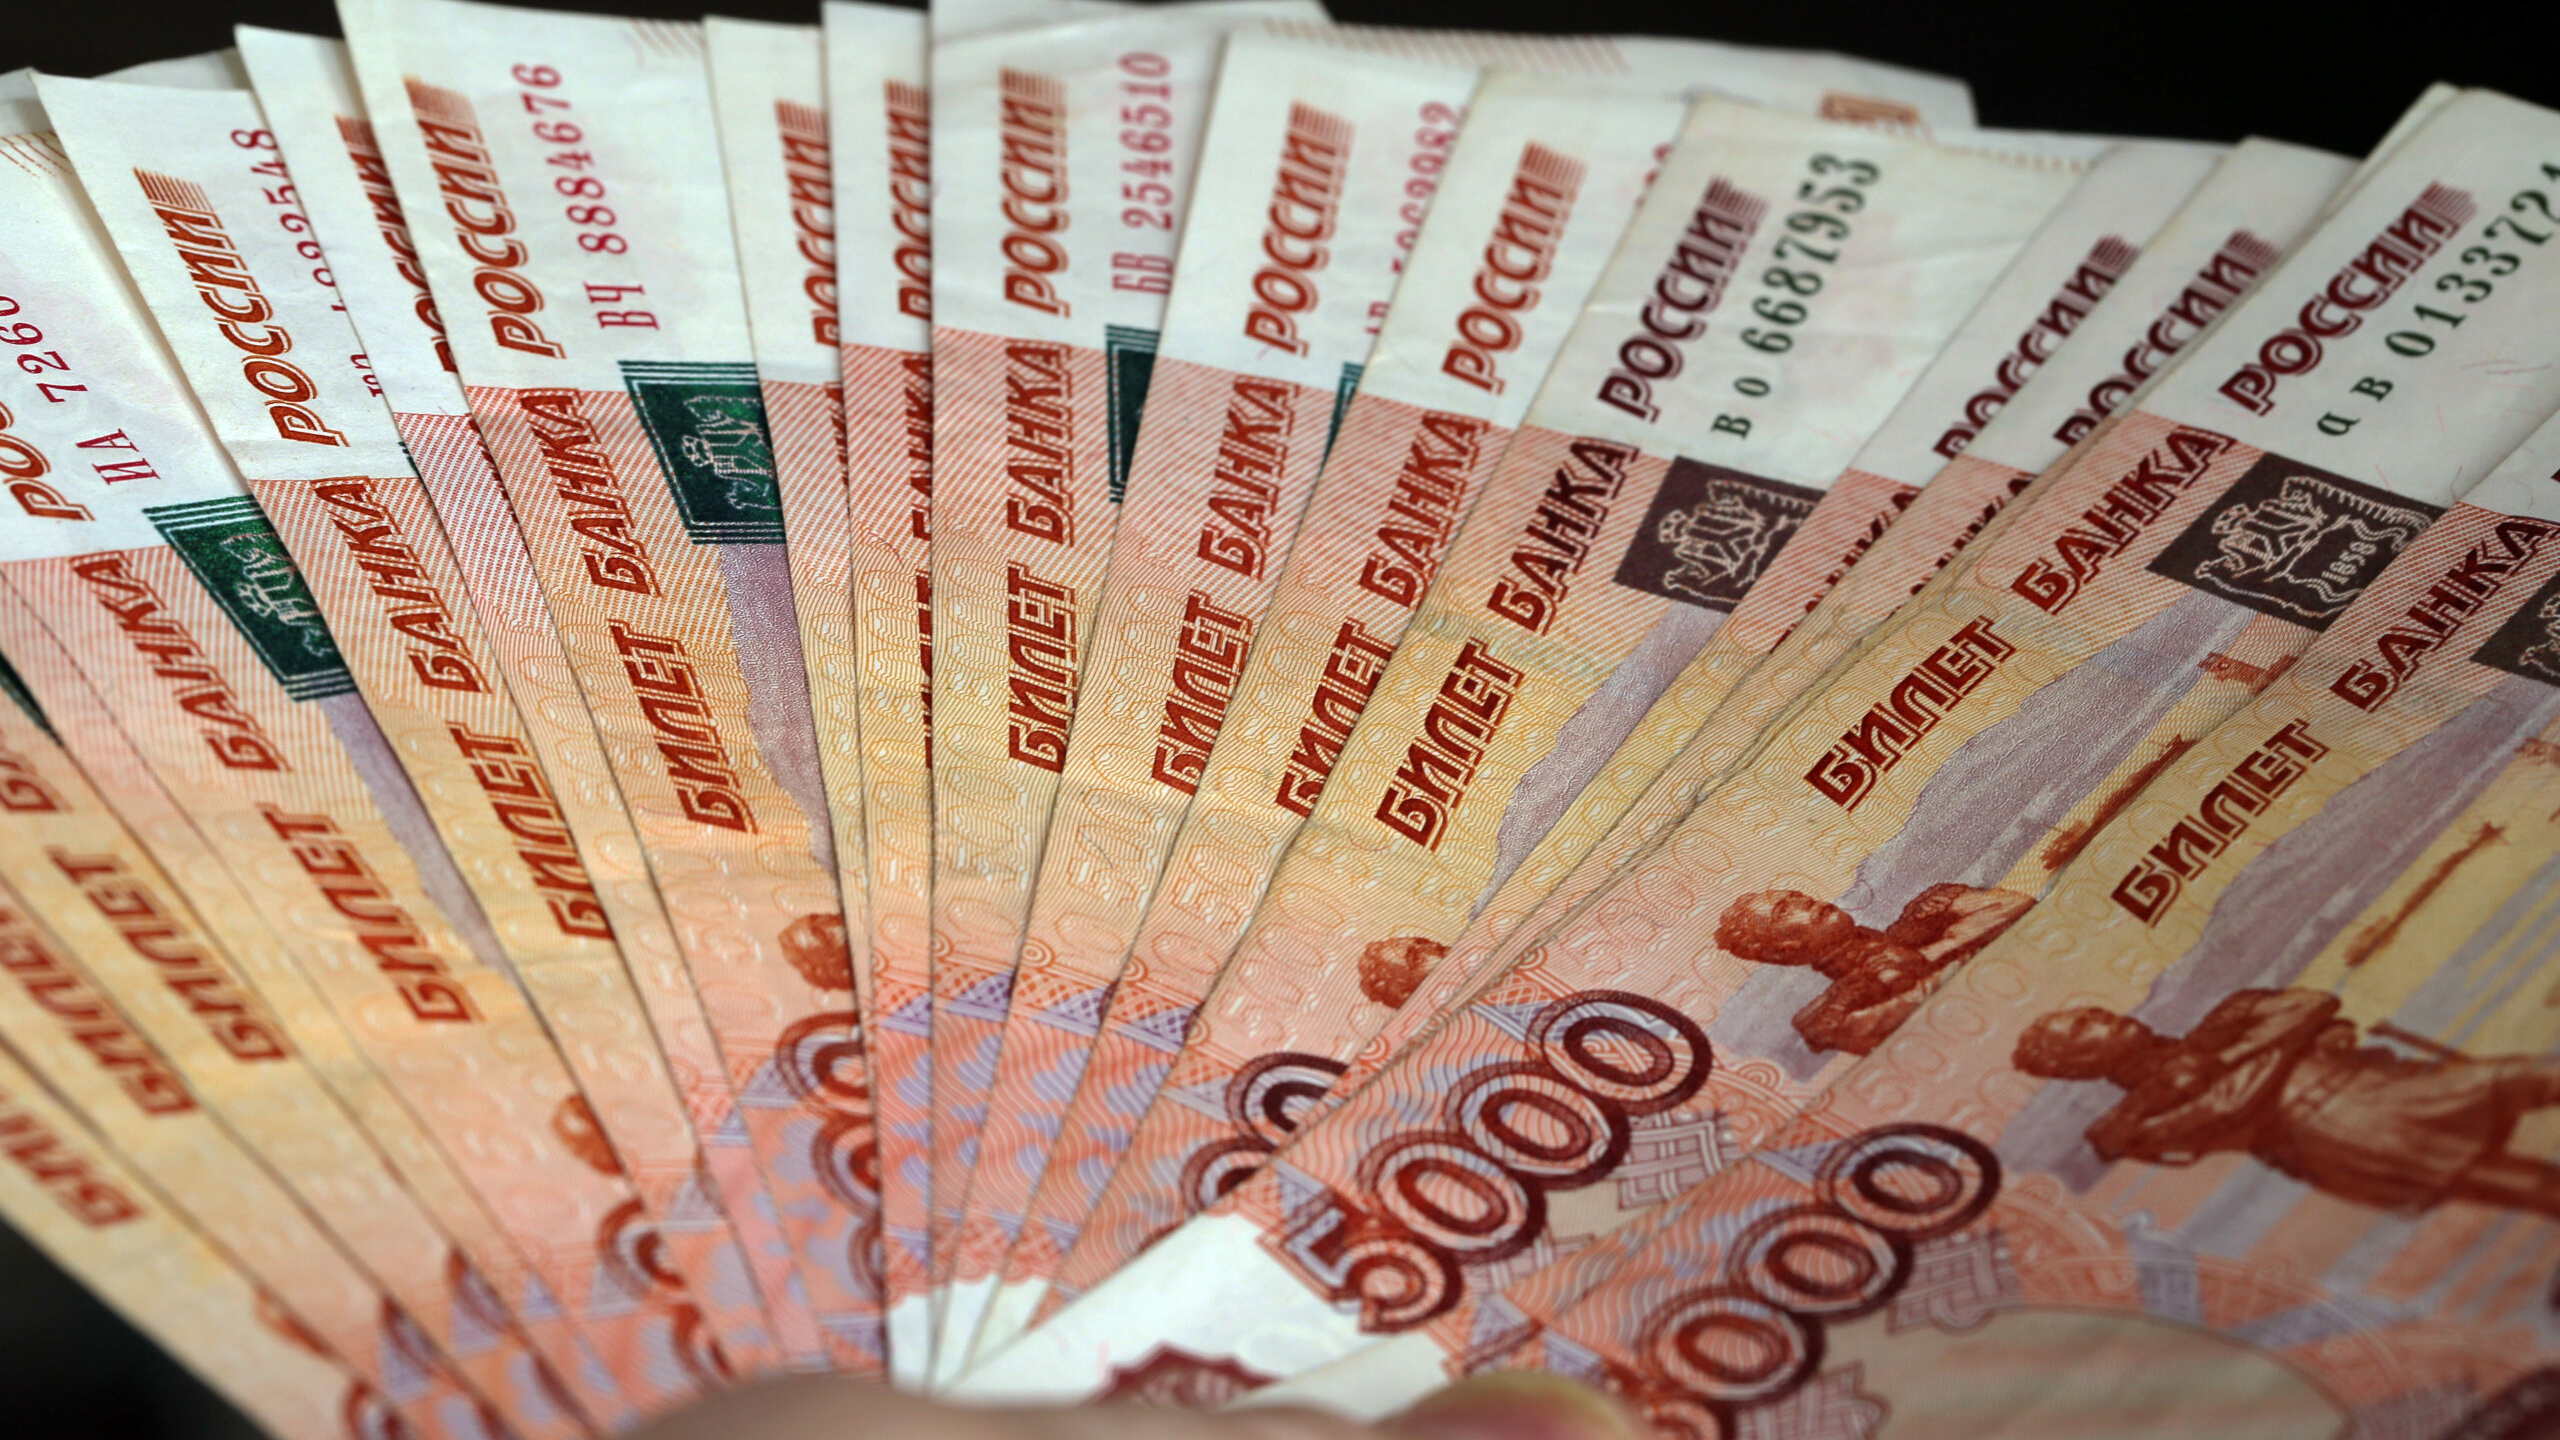 Прокуратура потребовала от государственных учреждений погасить долг на 1,5 млн рублей перед предпринимателями